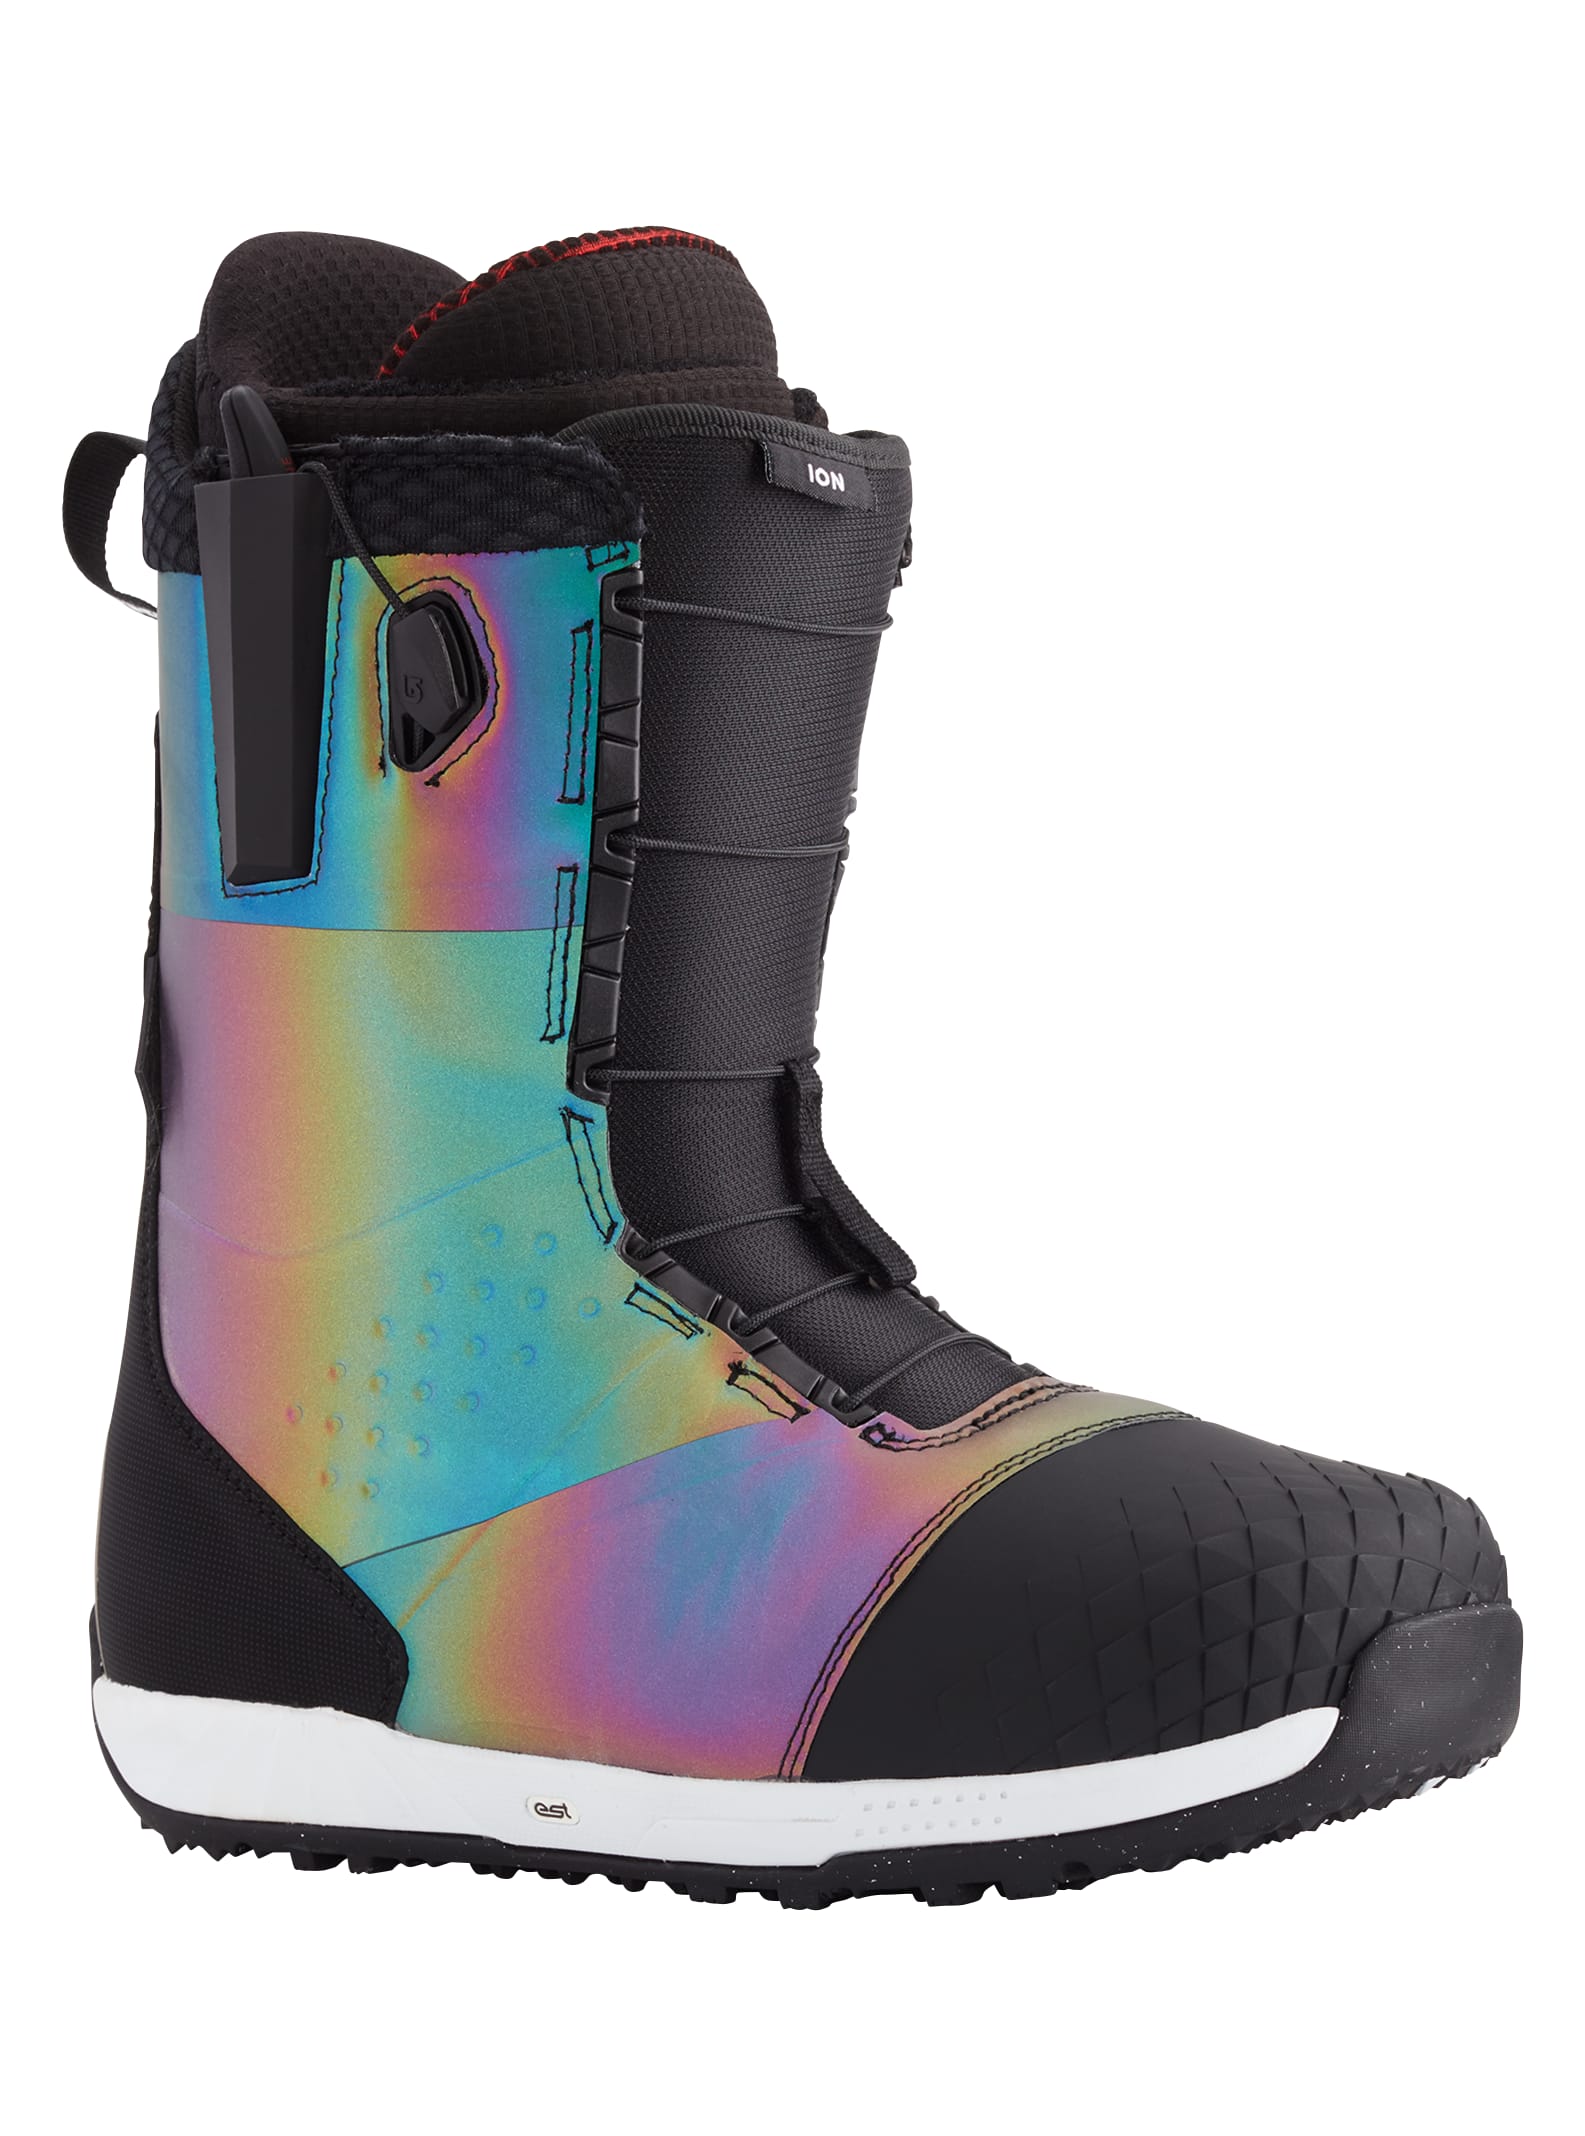 Burton Ion Snowboard-Boots für Herren | Burton.com Winter 2021 CH